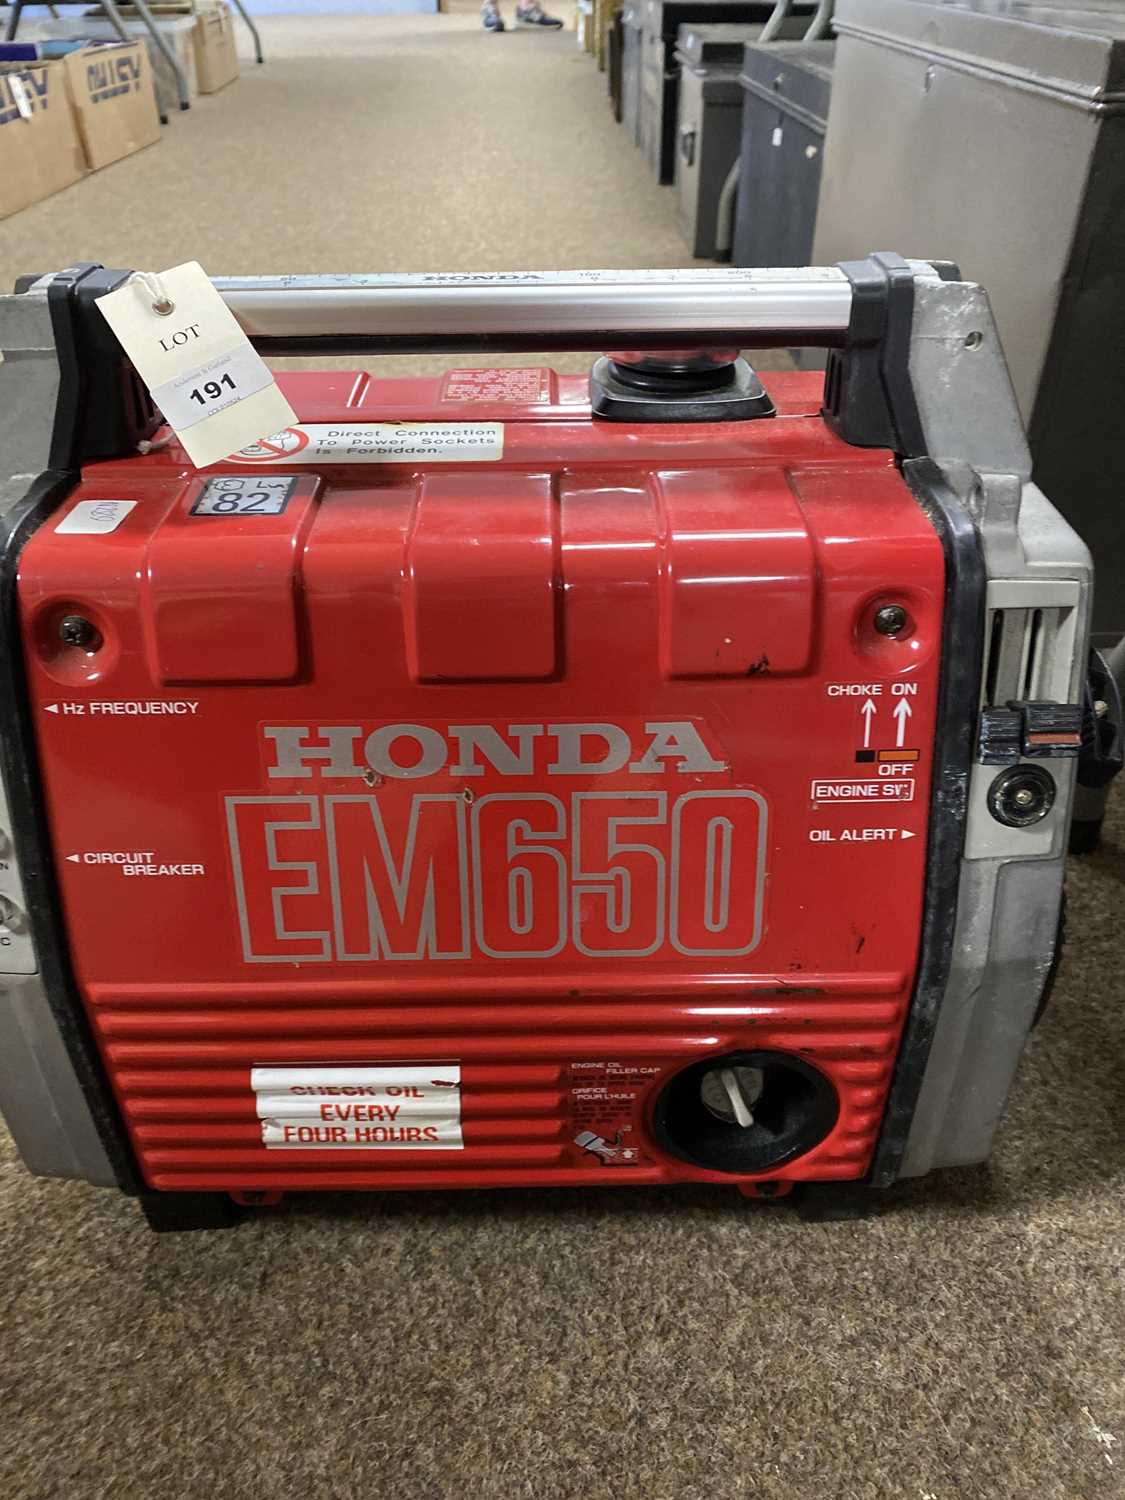 A Honda EM650 portable generator - Image 5 of 10